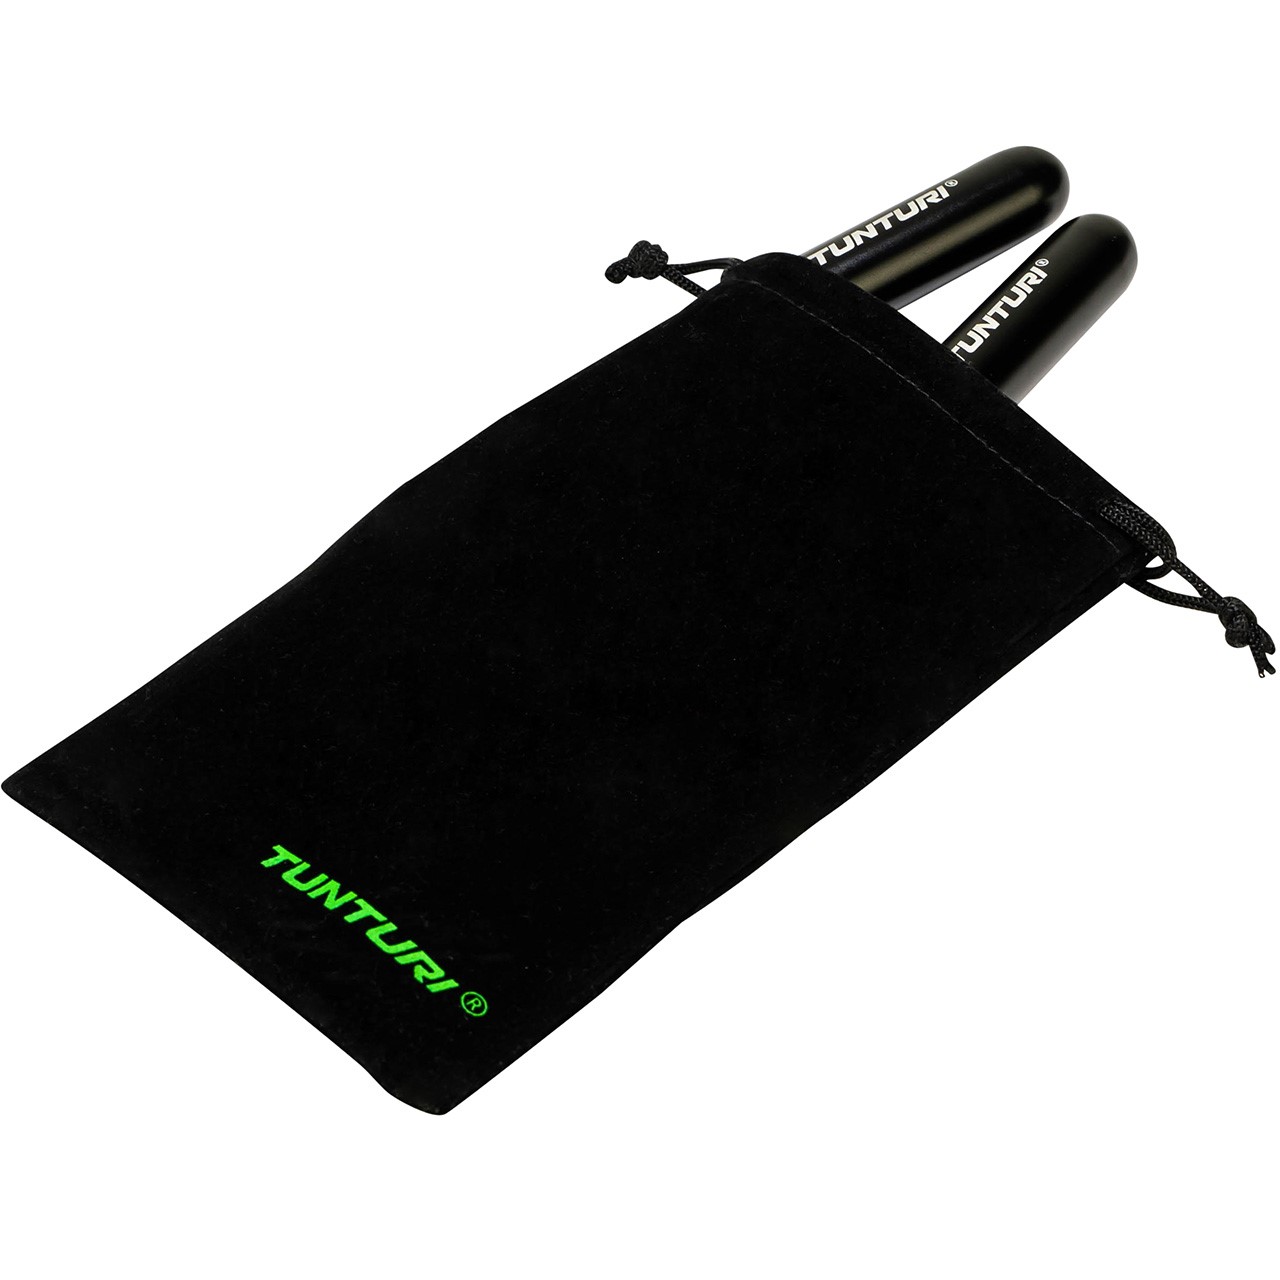 Adjustable Tunturi Pro Speed Jump Rope with Cloth Bag